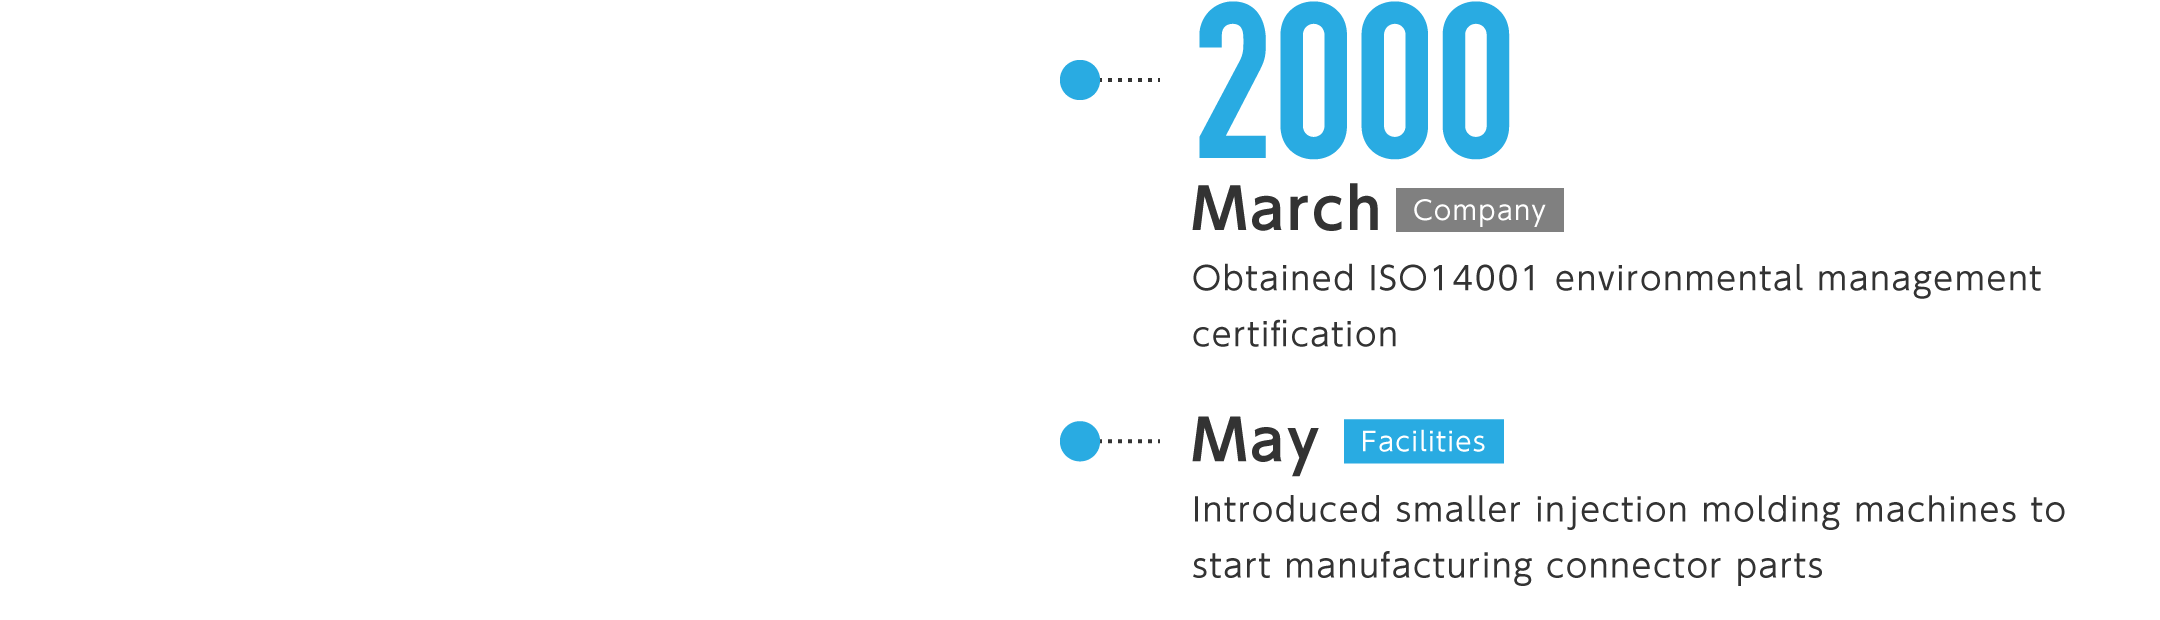 2000年3月-環境ISO14001認証取得、5月-小型射出成形機を導入し、コネクタ部品の製造を開始